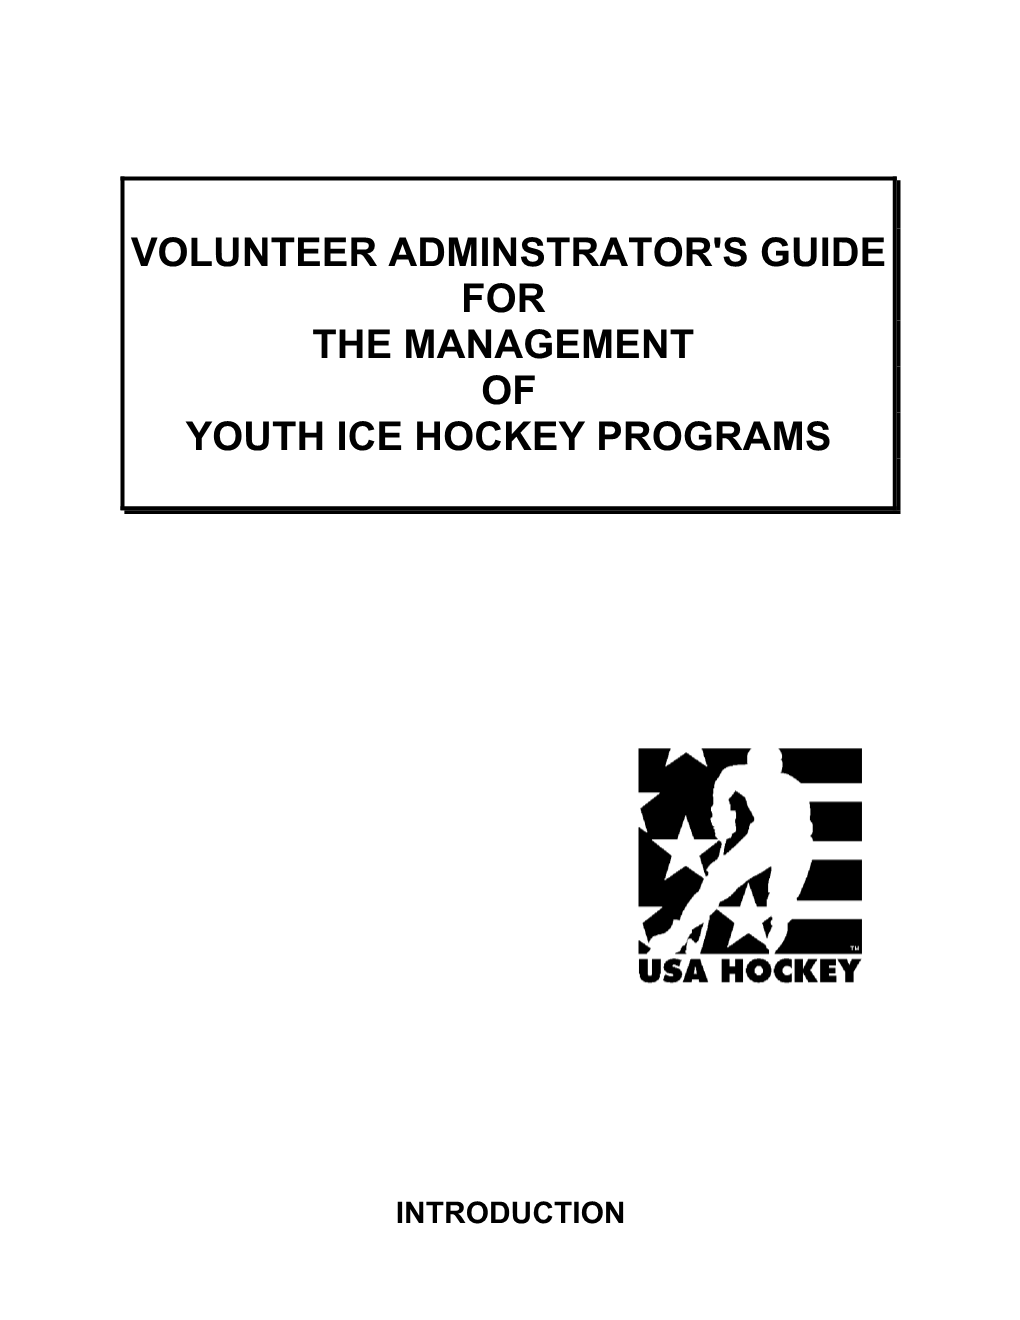 Volunteer Adminstrator's Guide For